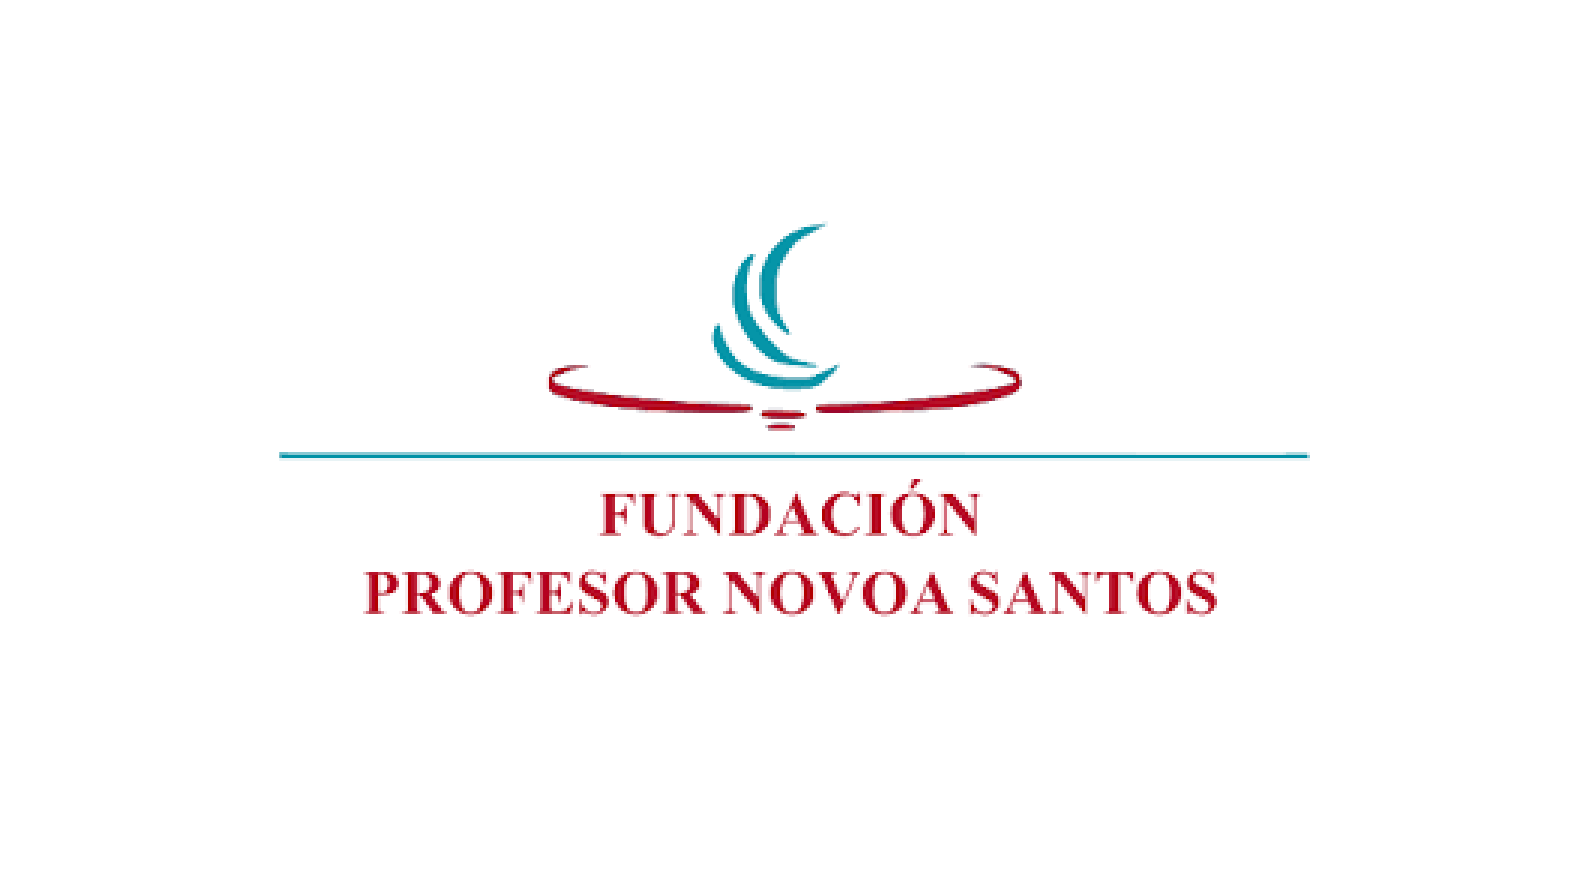 Fundación Profesor Novoa Santos